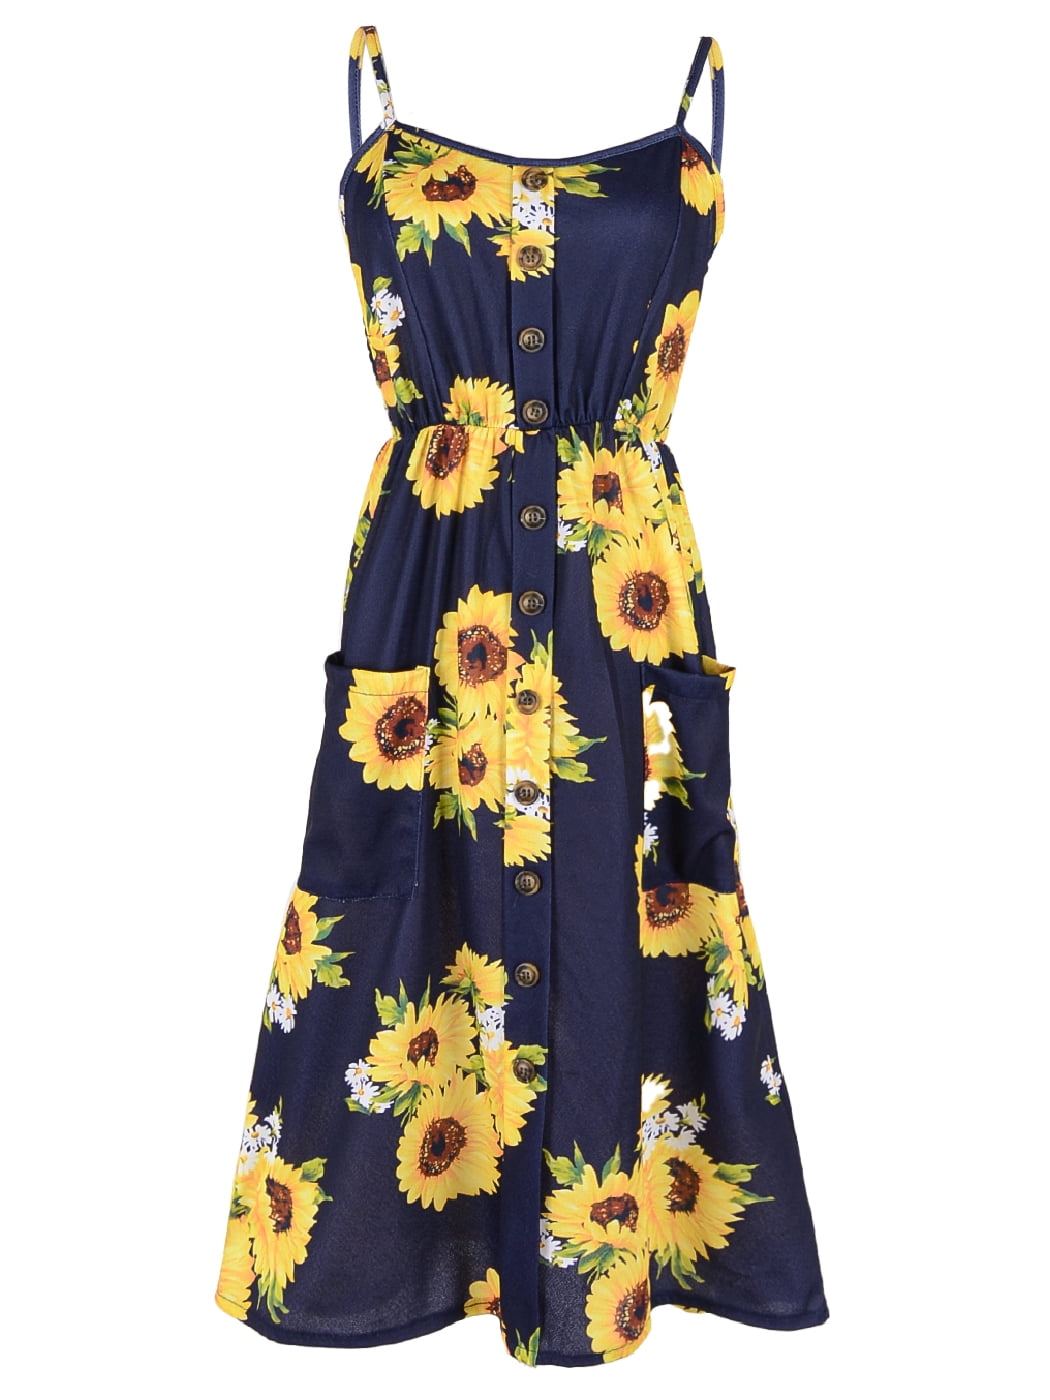 Feinuhan Womens Sunflower Print Dress ...